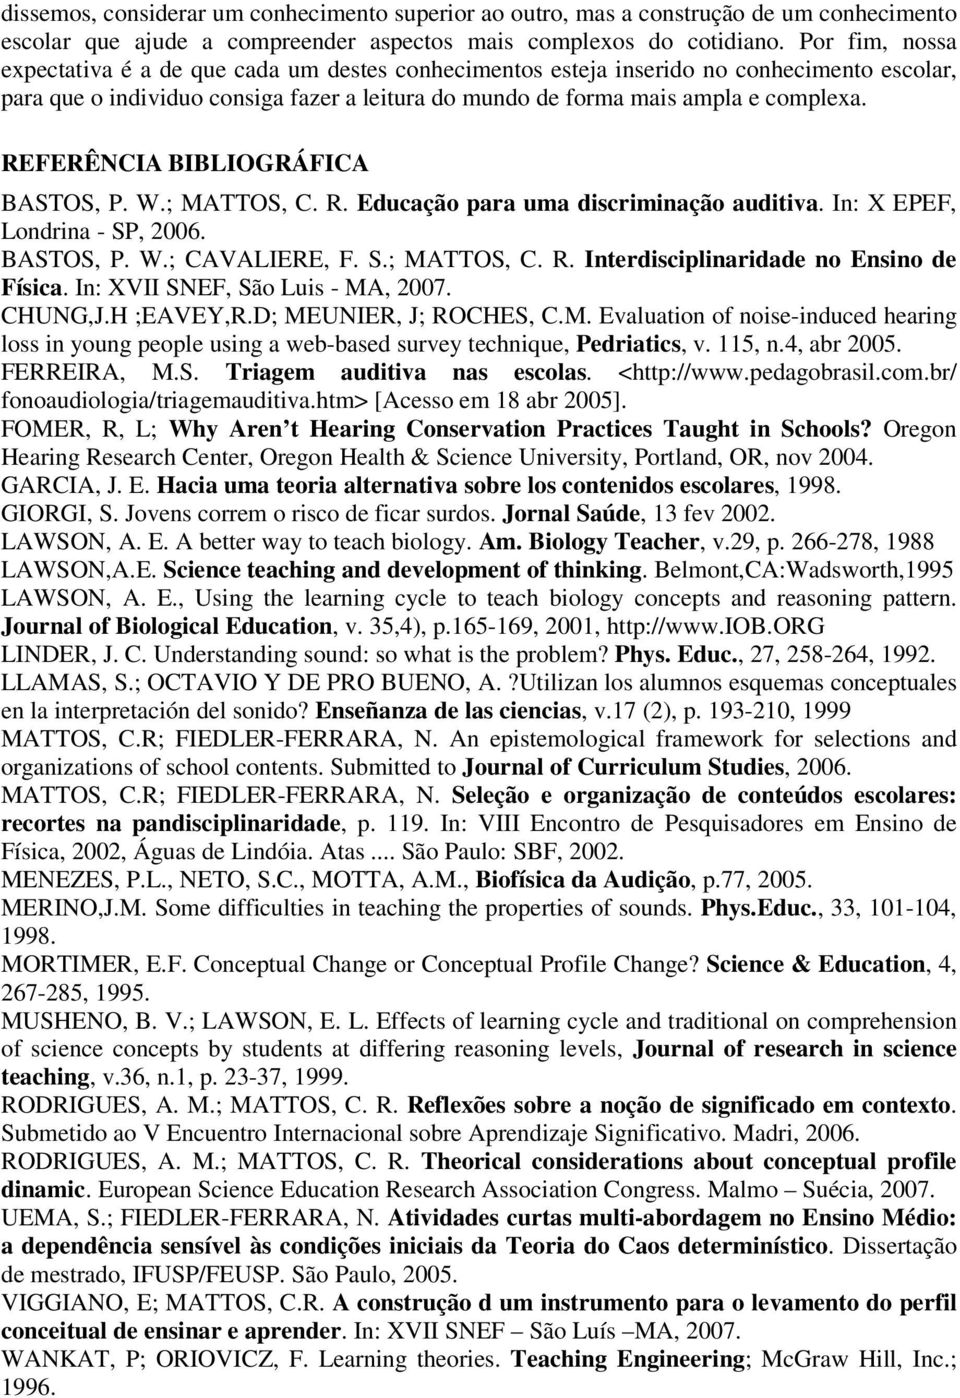 REFERÊNCIA BIBLIOGRÁFICA BASTOS, P. W.; MATTOS, C. R. Educação para uma discriminação auditiva. In: X EPEF, Londrina - SP, 2006. BASTOS, P. W.; CAVALIERE, F. S.; MATTOS, C. R. Interdisciplinaridade no Ensino de Física.